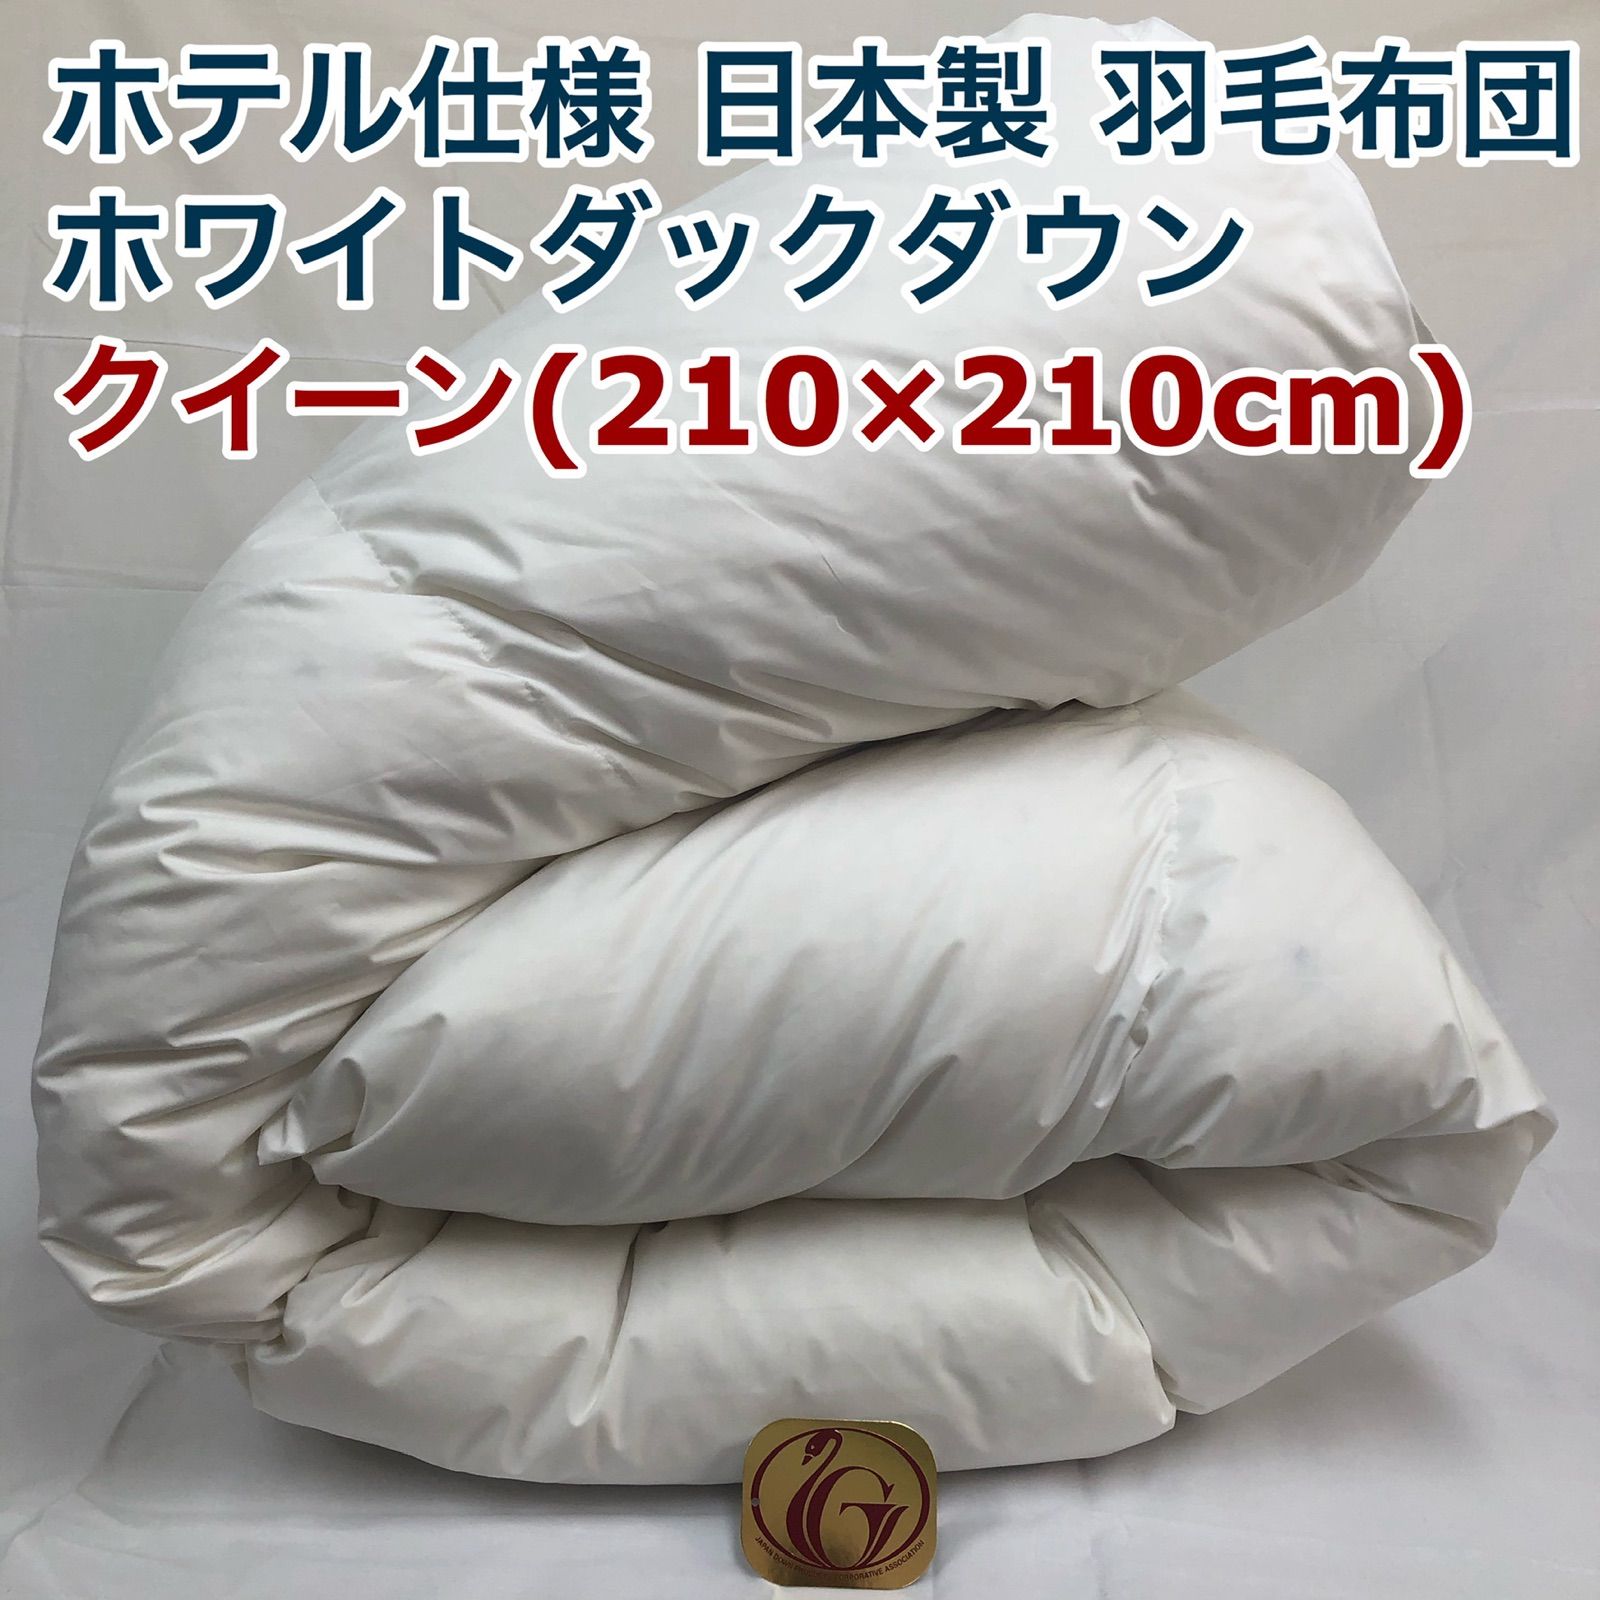 羽毛布団 クイーン クィーン ニューゴールド 白色 日本製 210×210cm ...